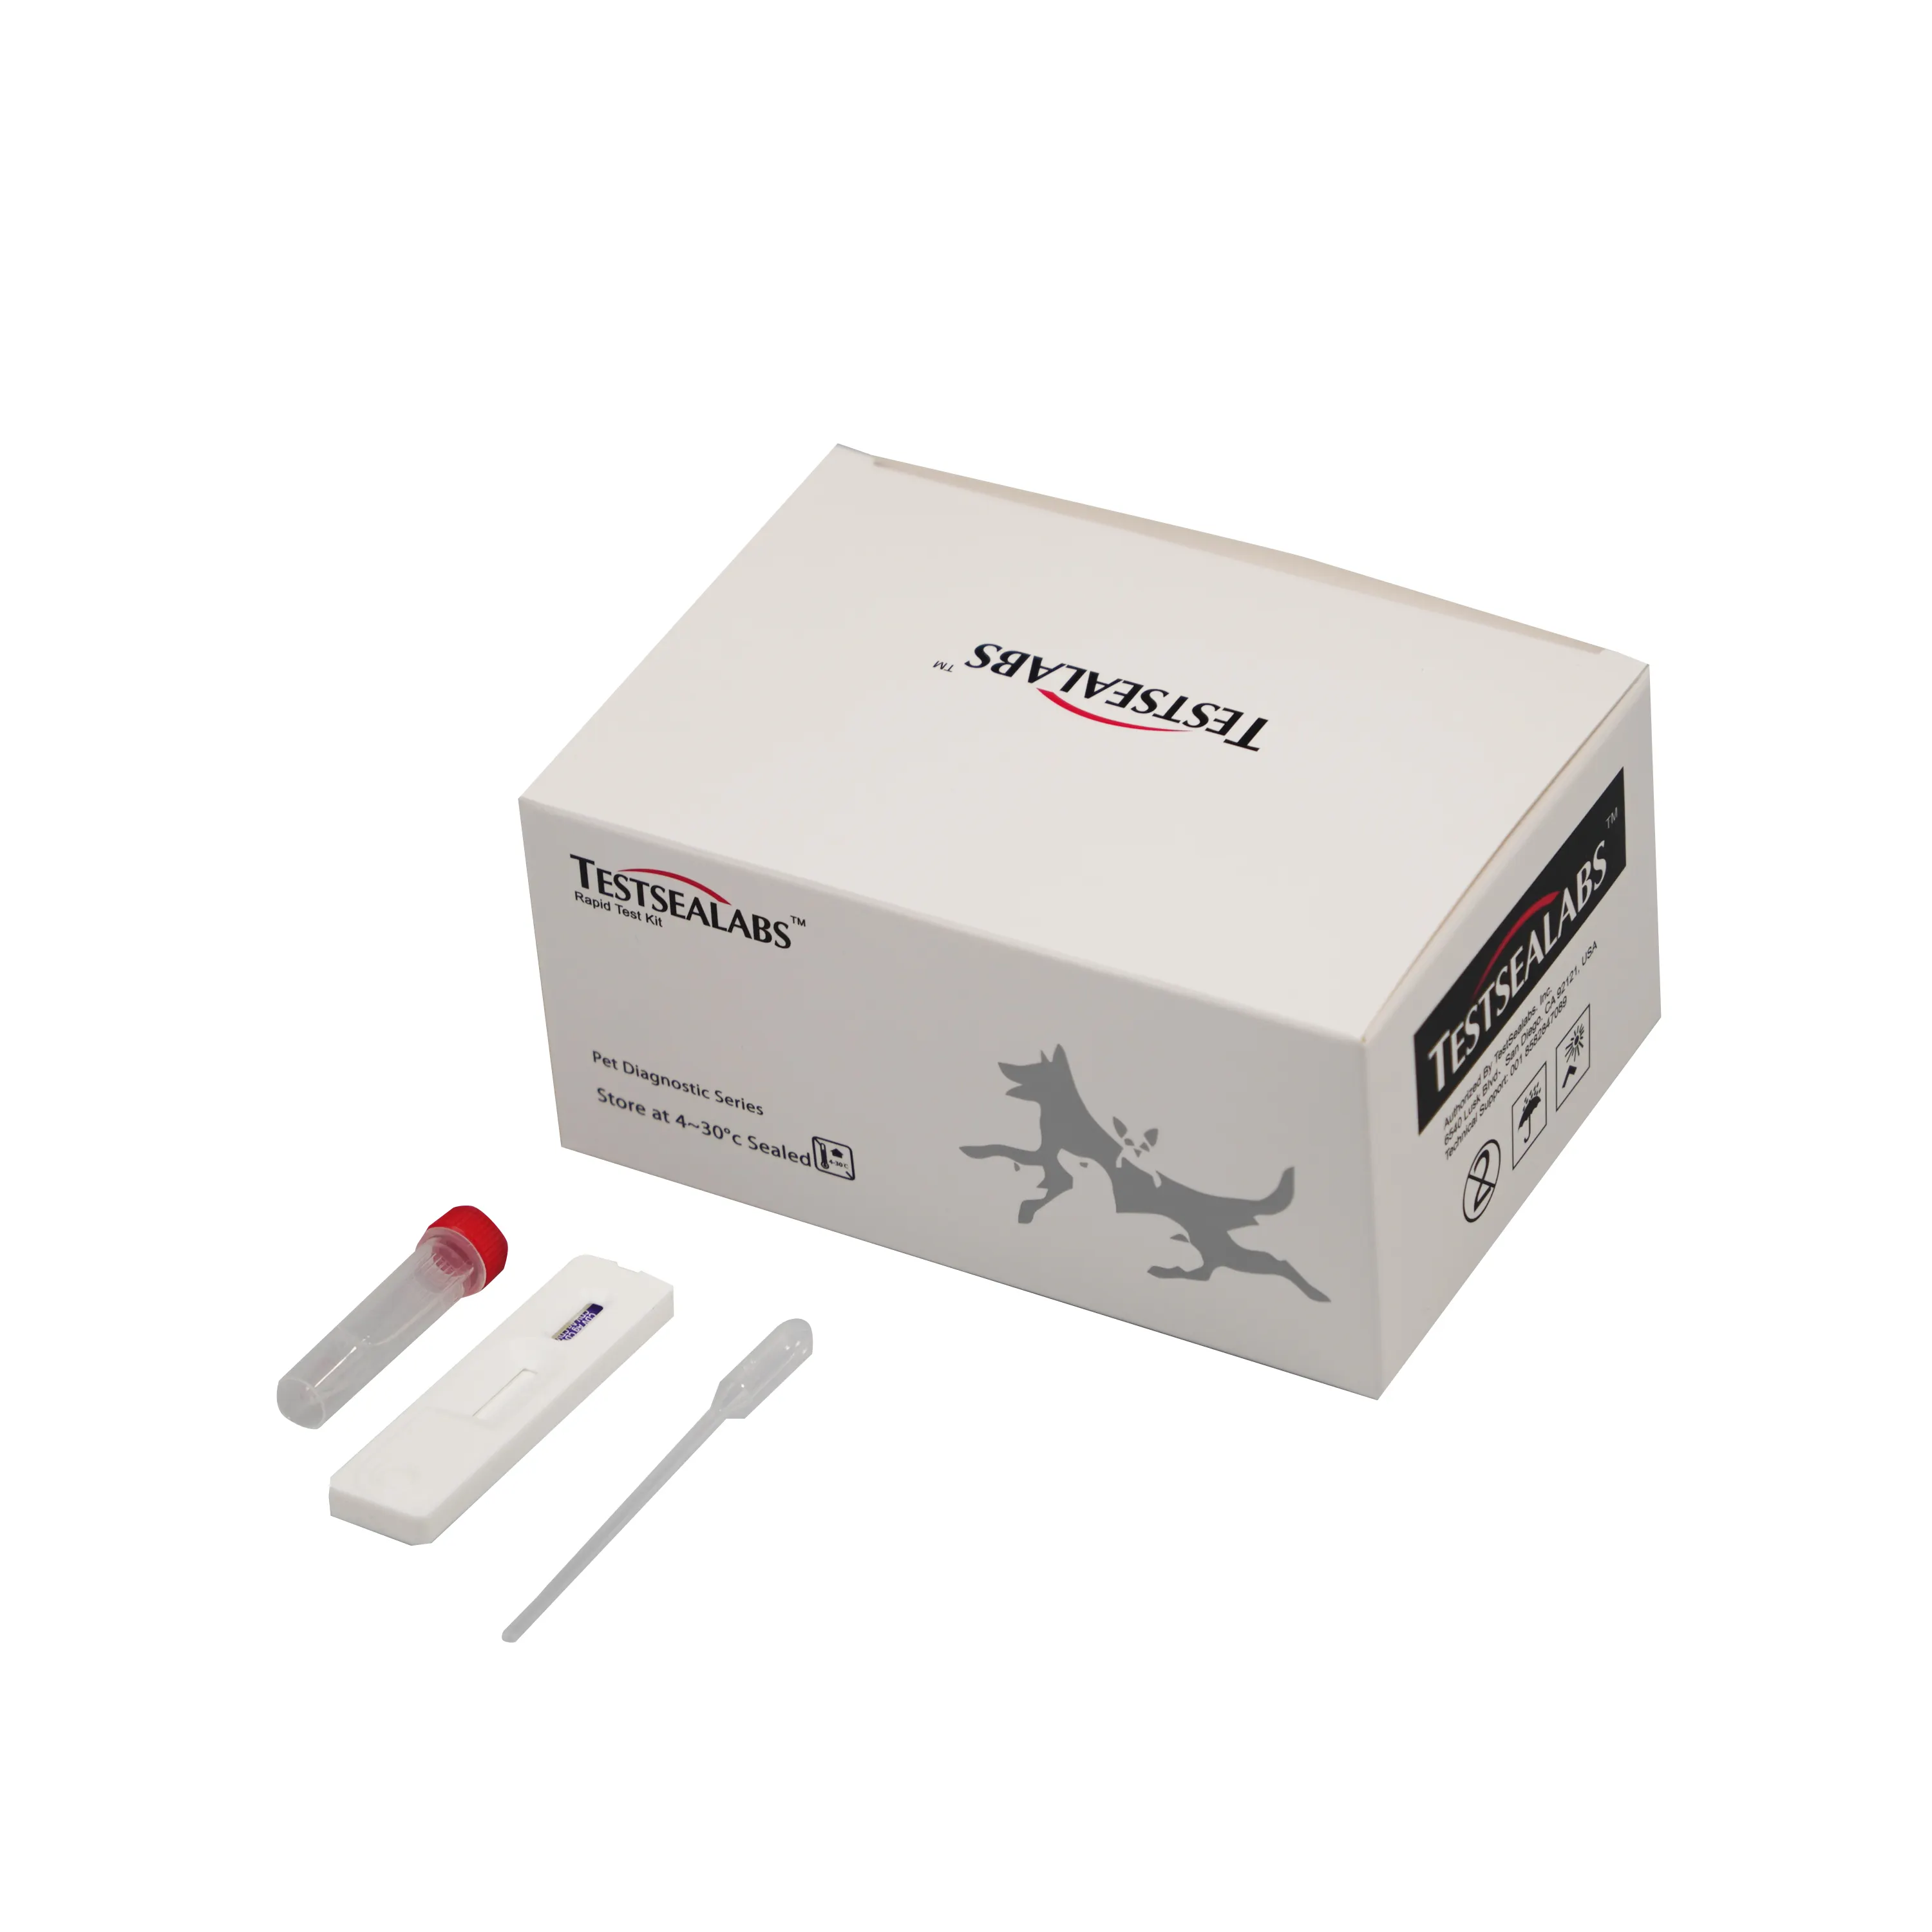 टेस्टसीलैब्स अनकट शीट सीडीवी एजी डायग्नोस्टिक रैपिड टेस्ट किट कैनाइन के लिए फैक्टरी उपयोग